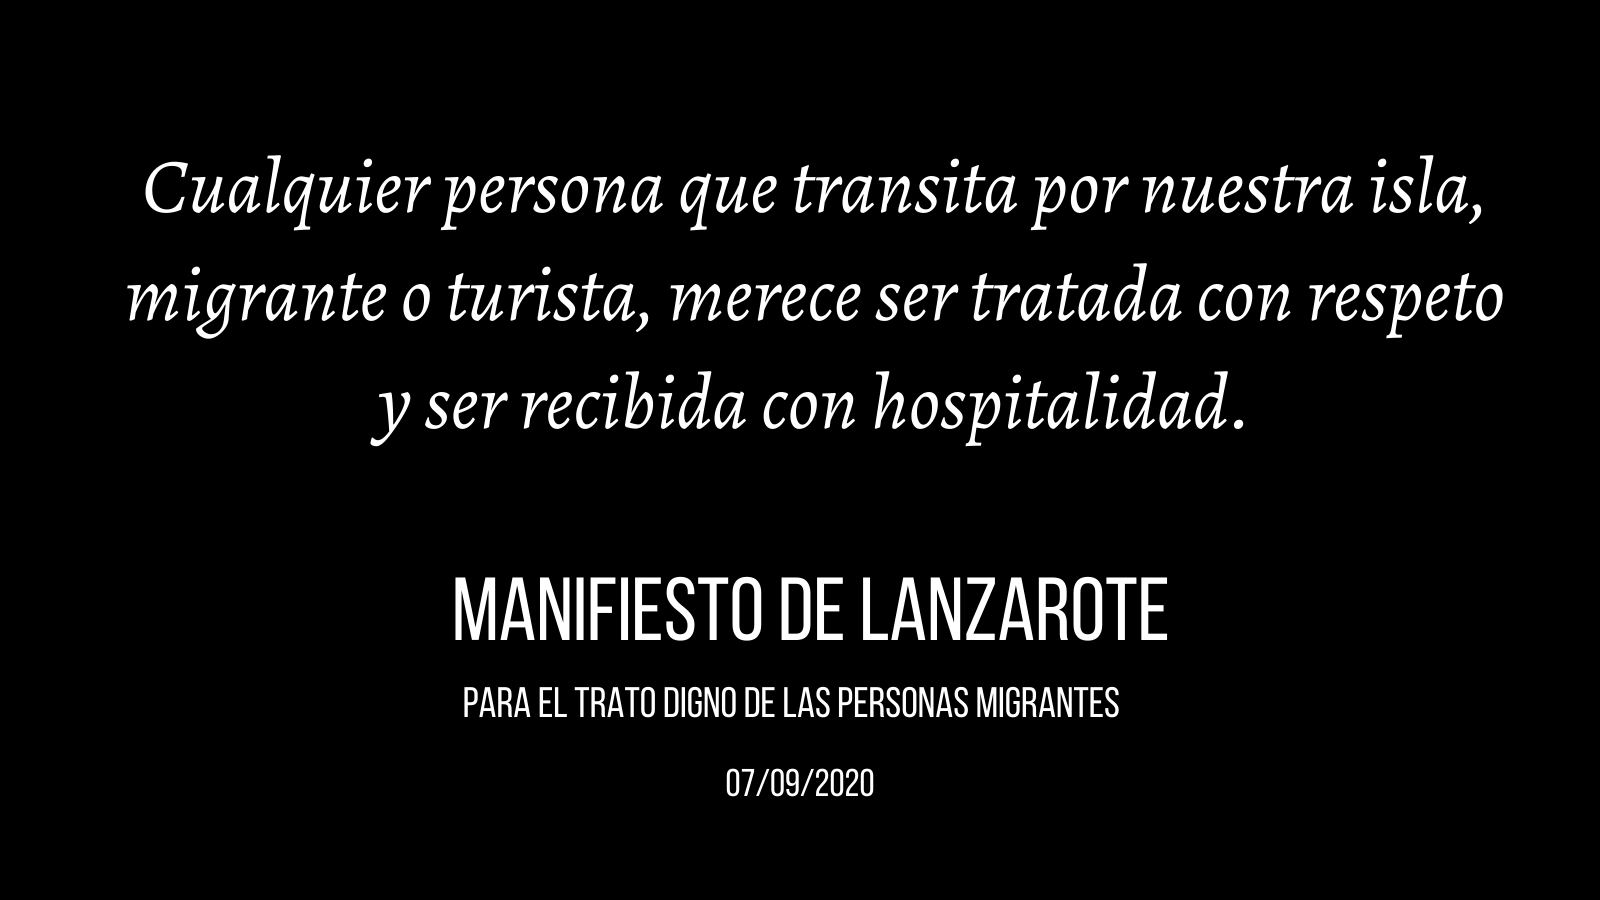 Red ciudadana de soloidaridad con las personas migrantes en Lanzarote